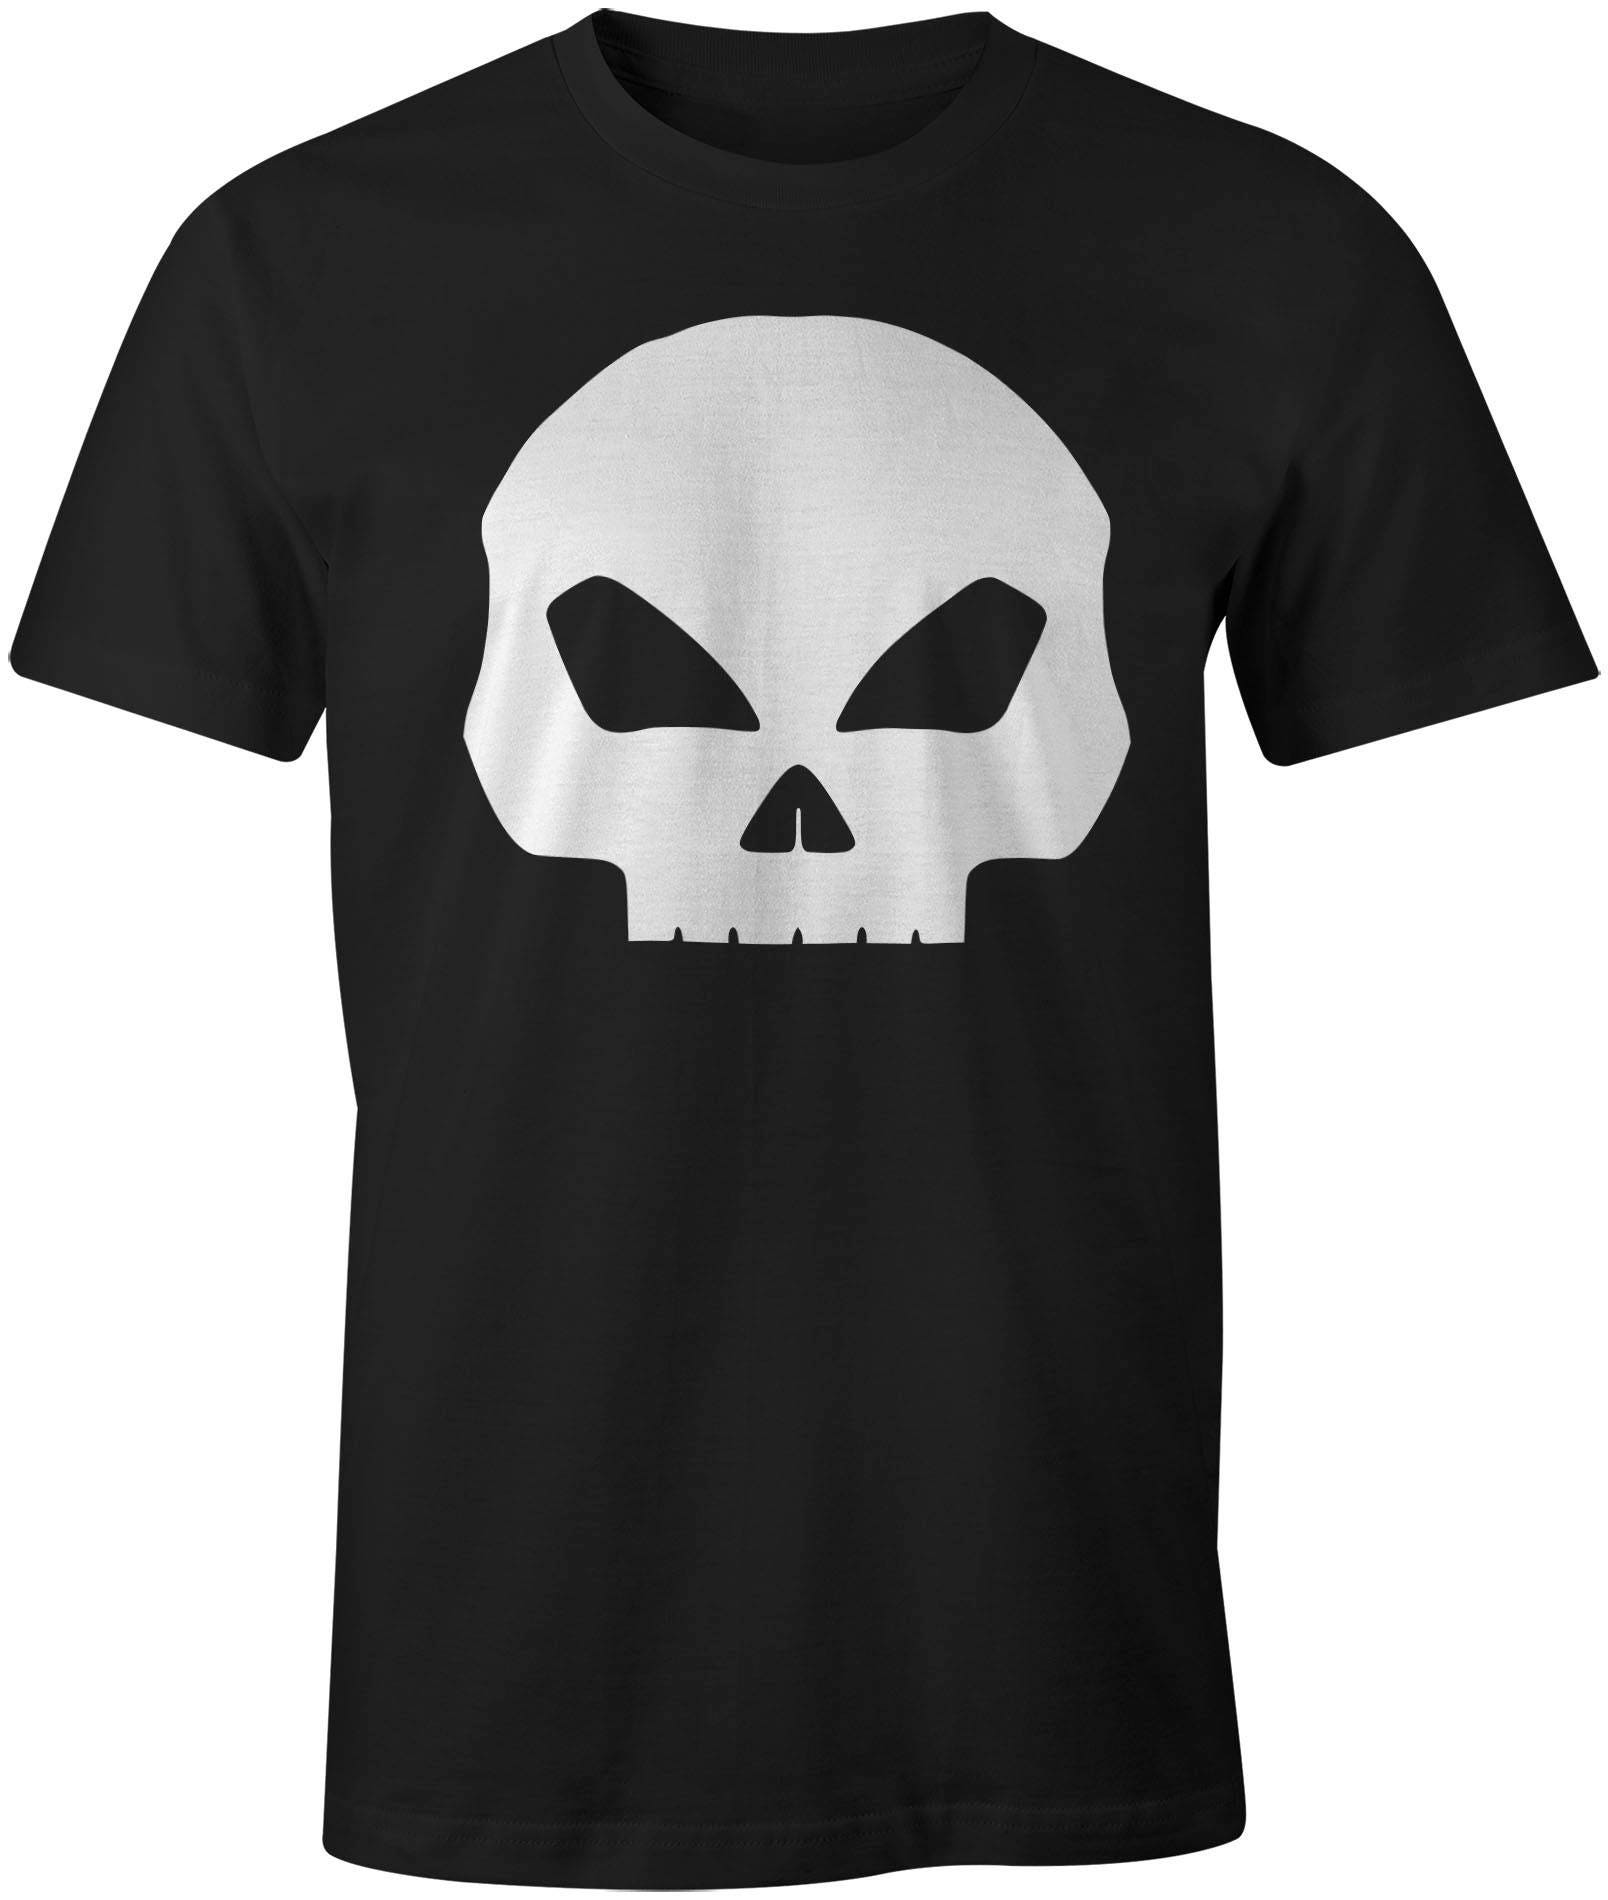 Skull T-Shirt Mens/Womens Funny Shirt Trend Fashion Shirt